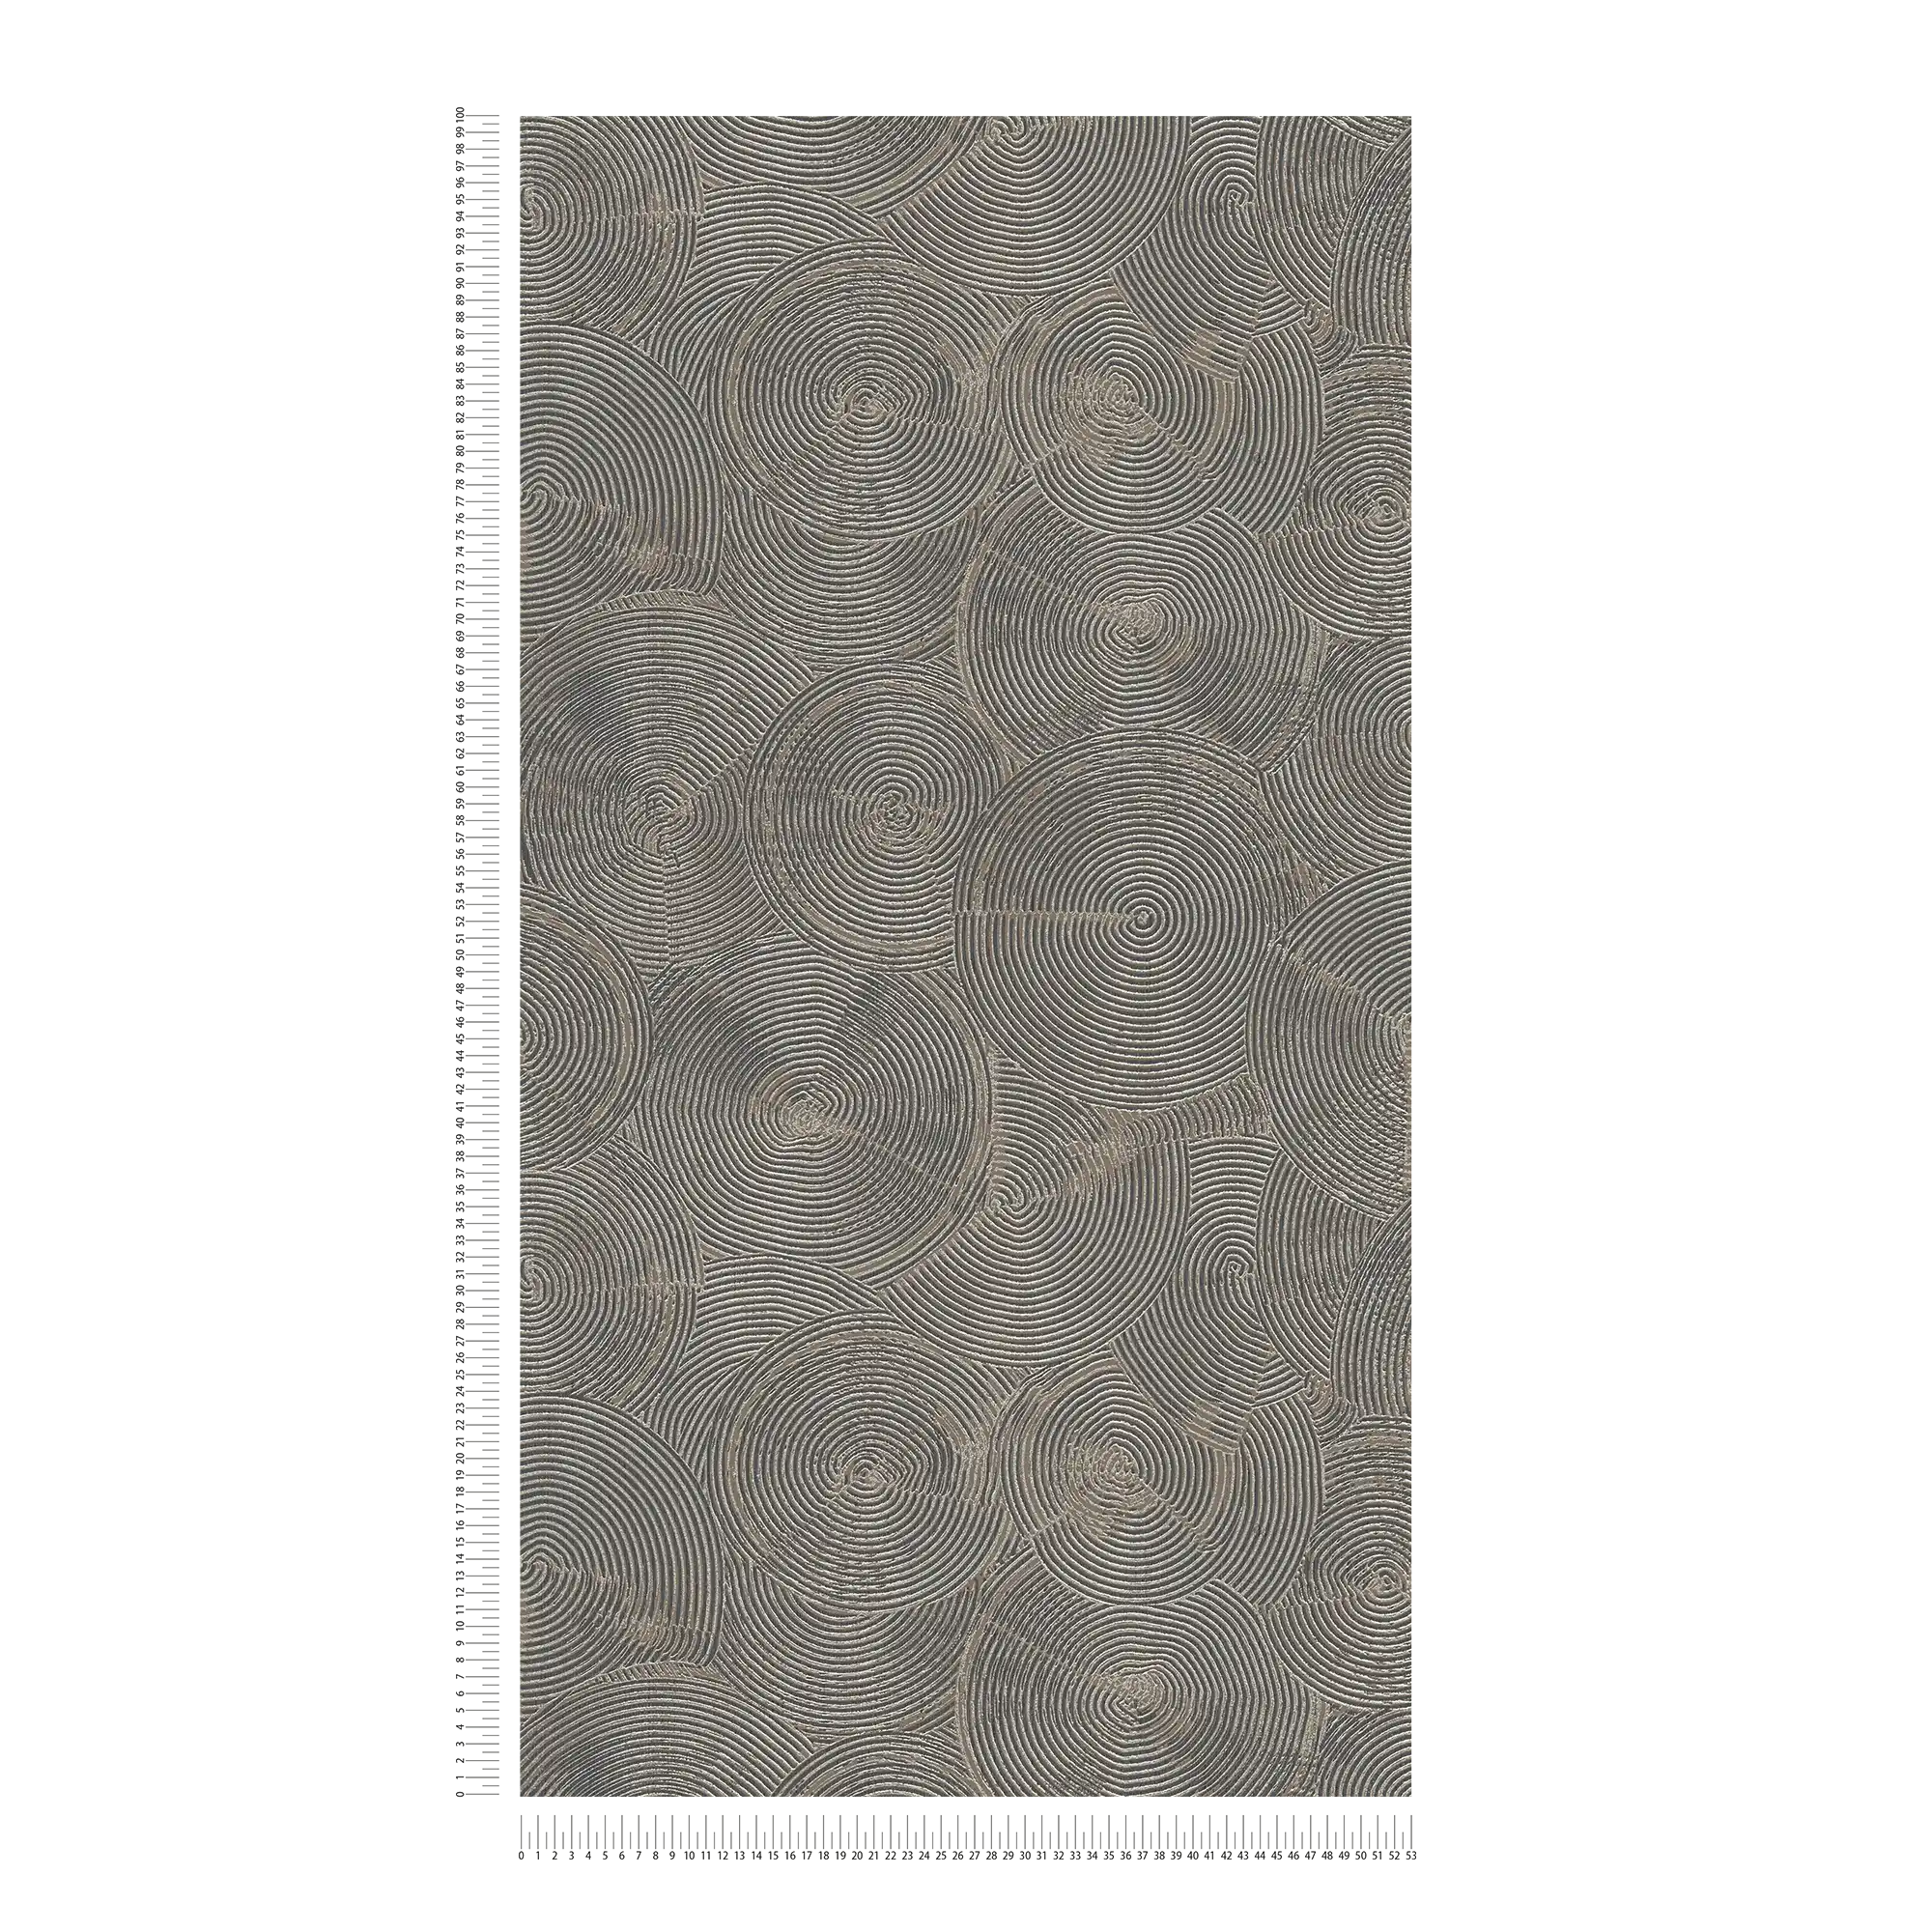             papel pintado de aspecto moderno de yeso con efecto metálico - marrón, metálico, negro
        